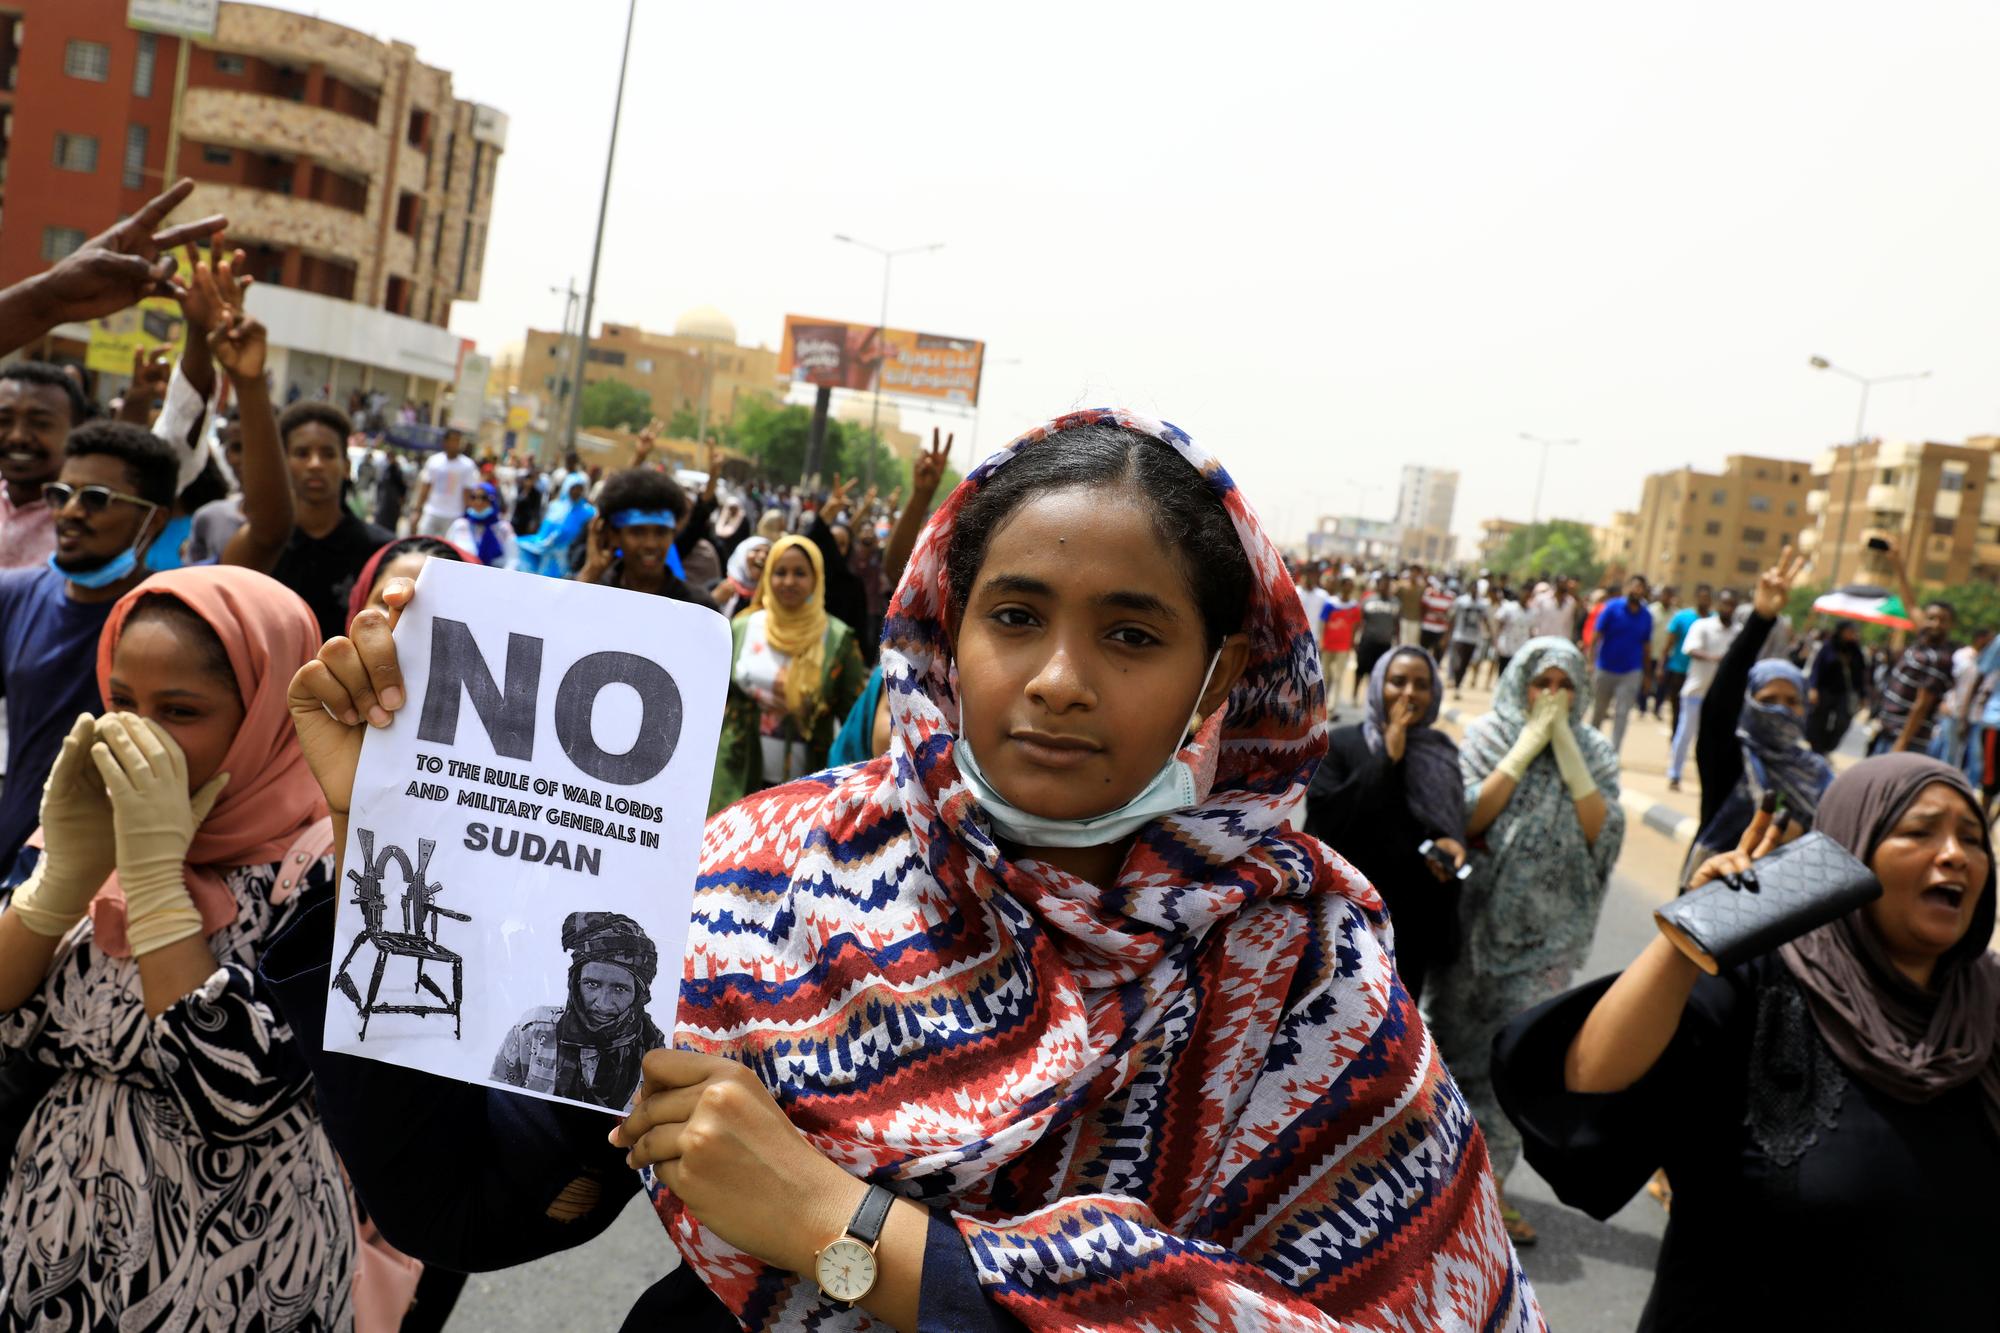 Des manifestants demandent depuis des semaines, notamment dans la capitale Khartoum, que les militaires remettent le pouvoir à un gouvernement civil au Soudan. [Reuters - Umit Bektas]